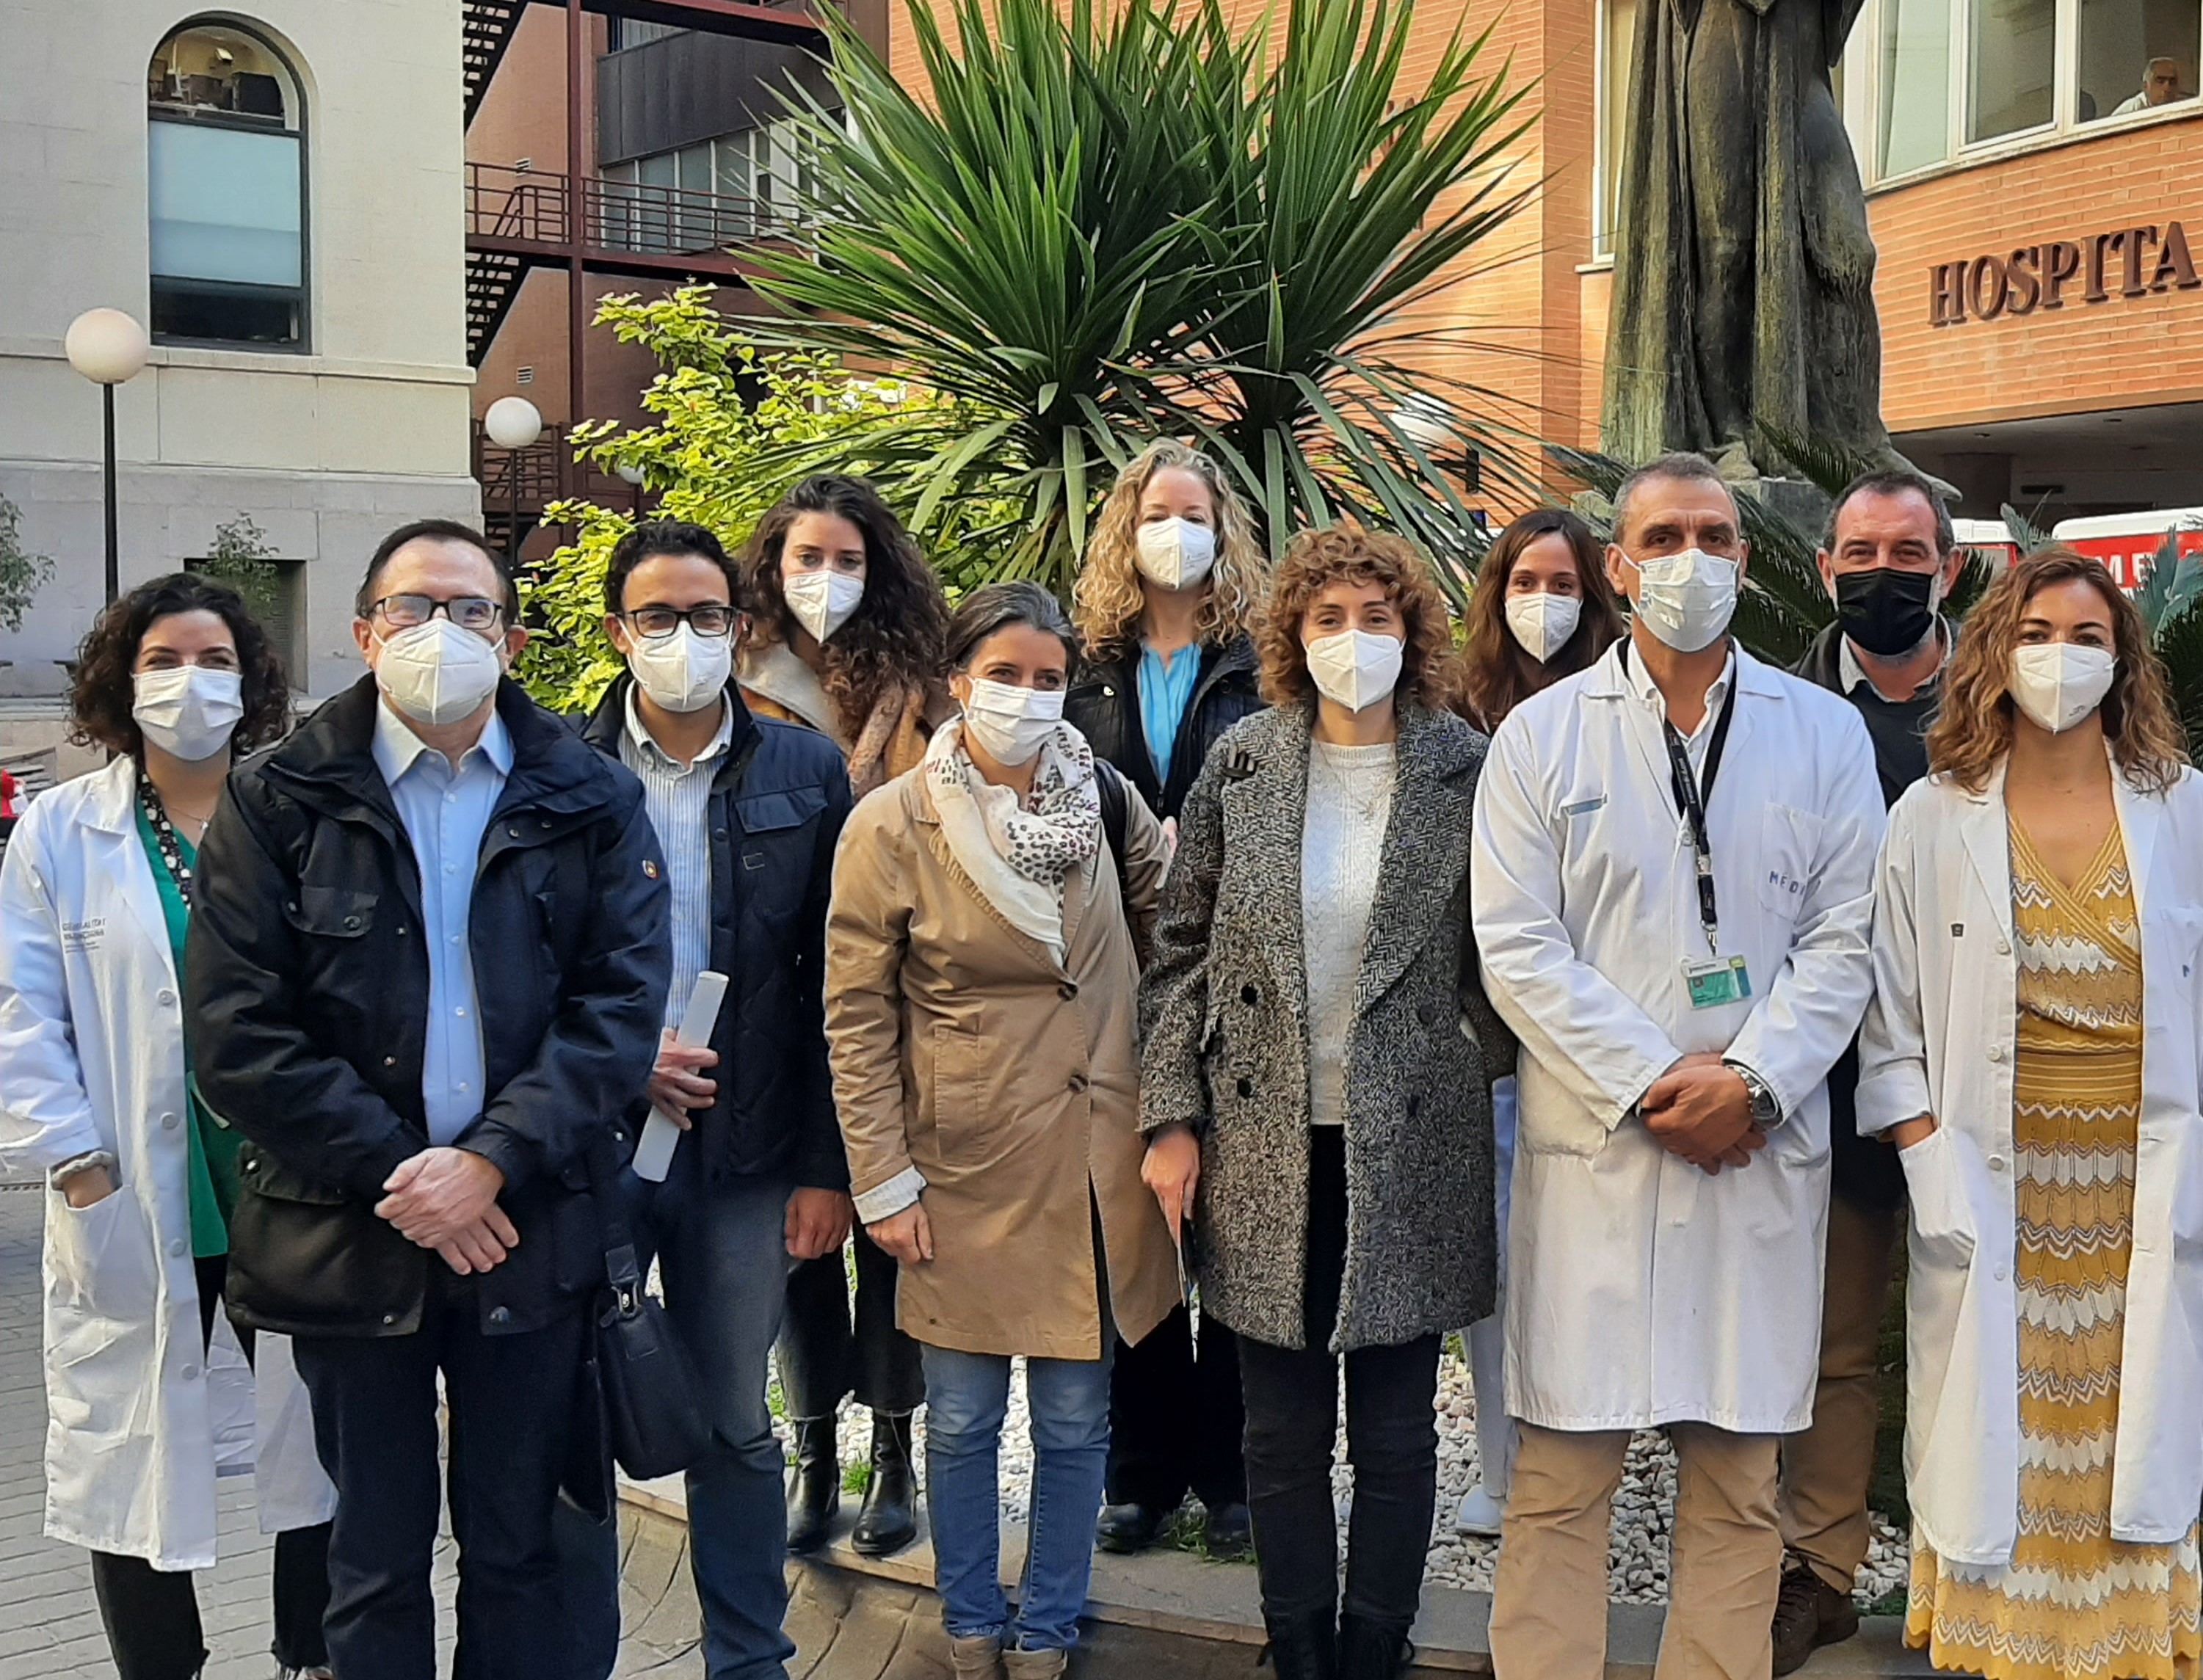 La Unidad de endometriosis del Hospital Clínico de València atiende más de 2.000 consultas al año